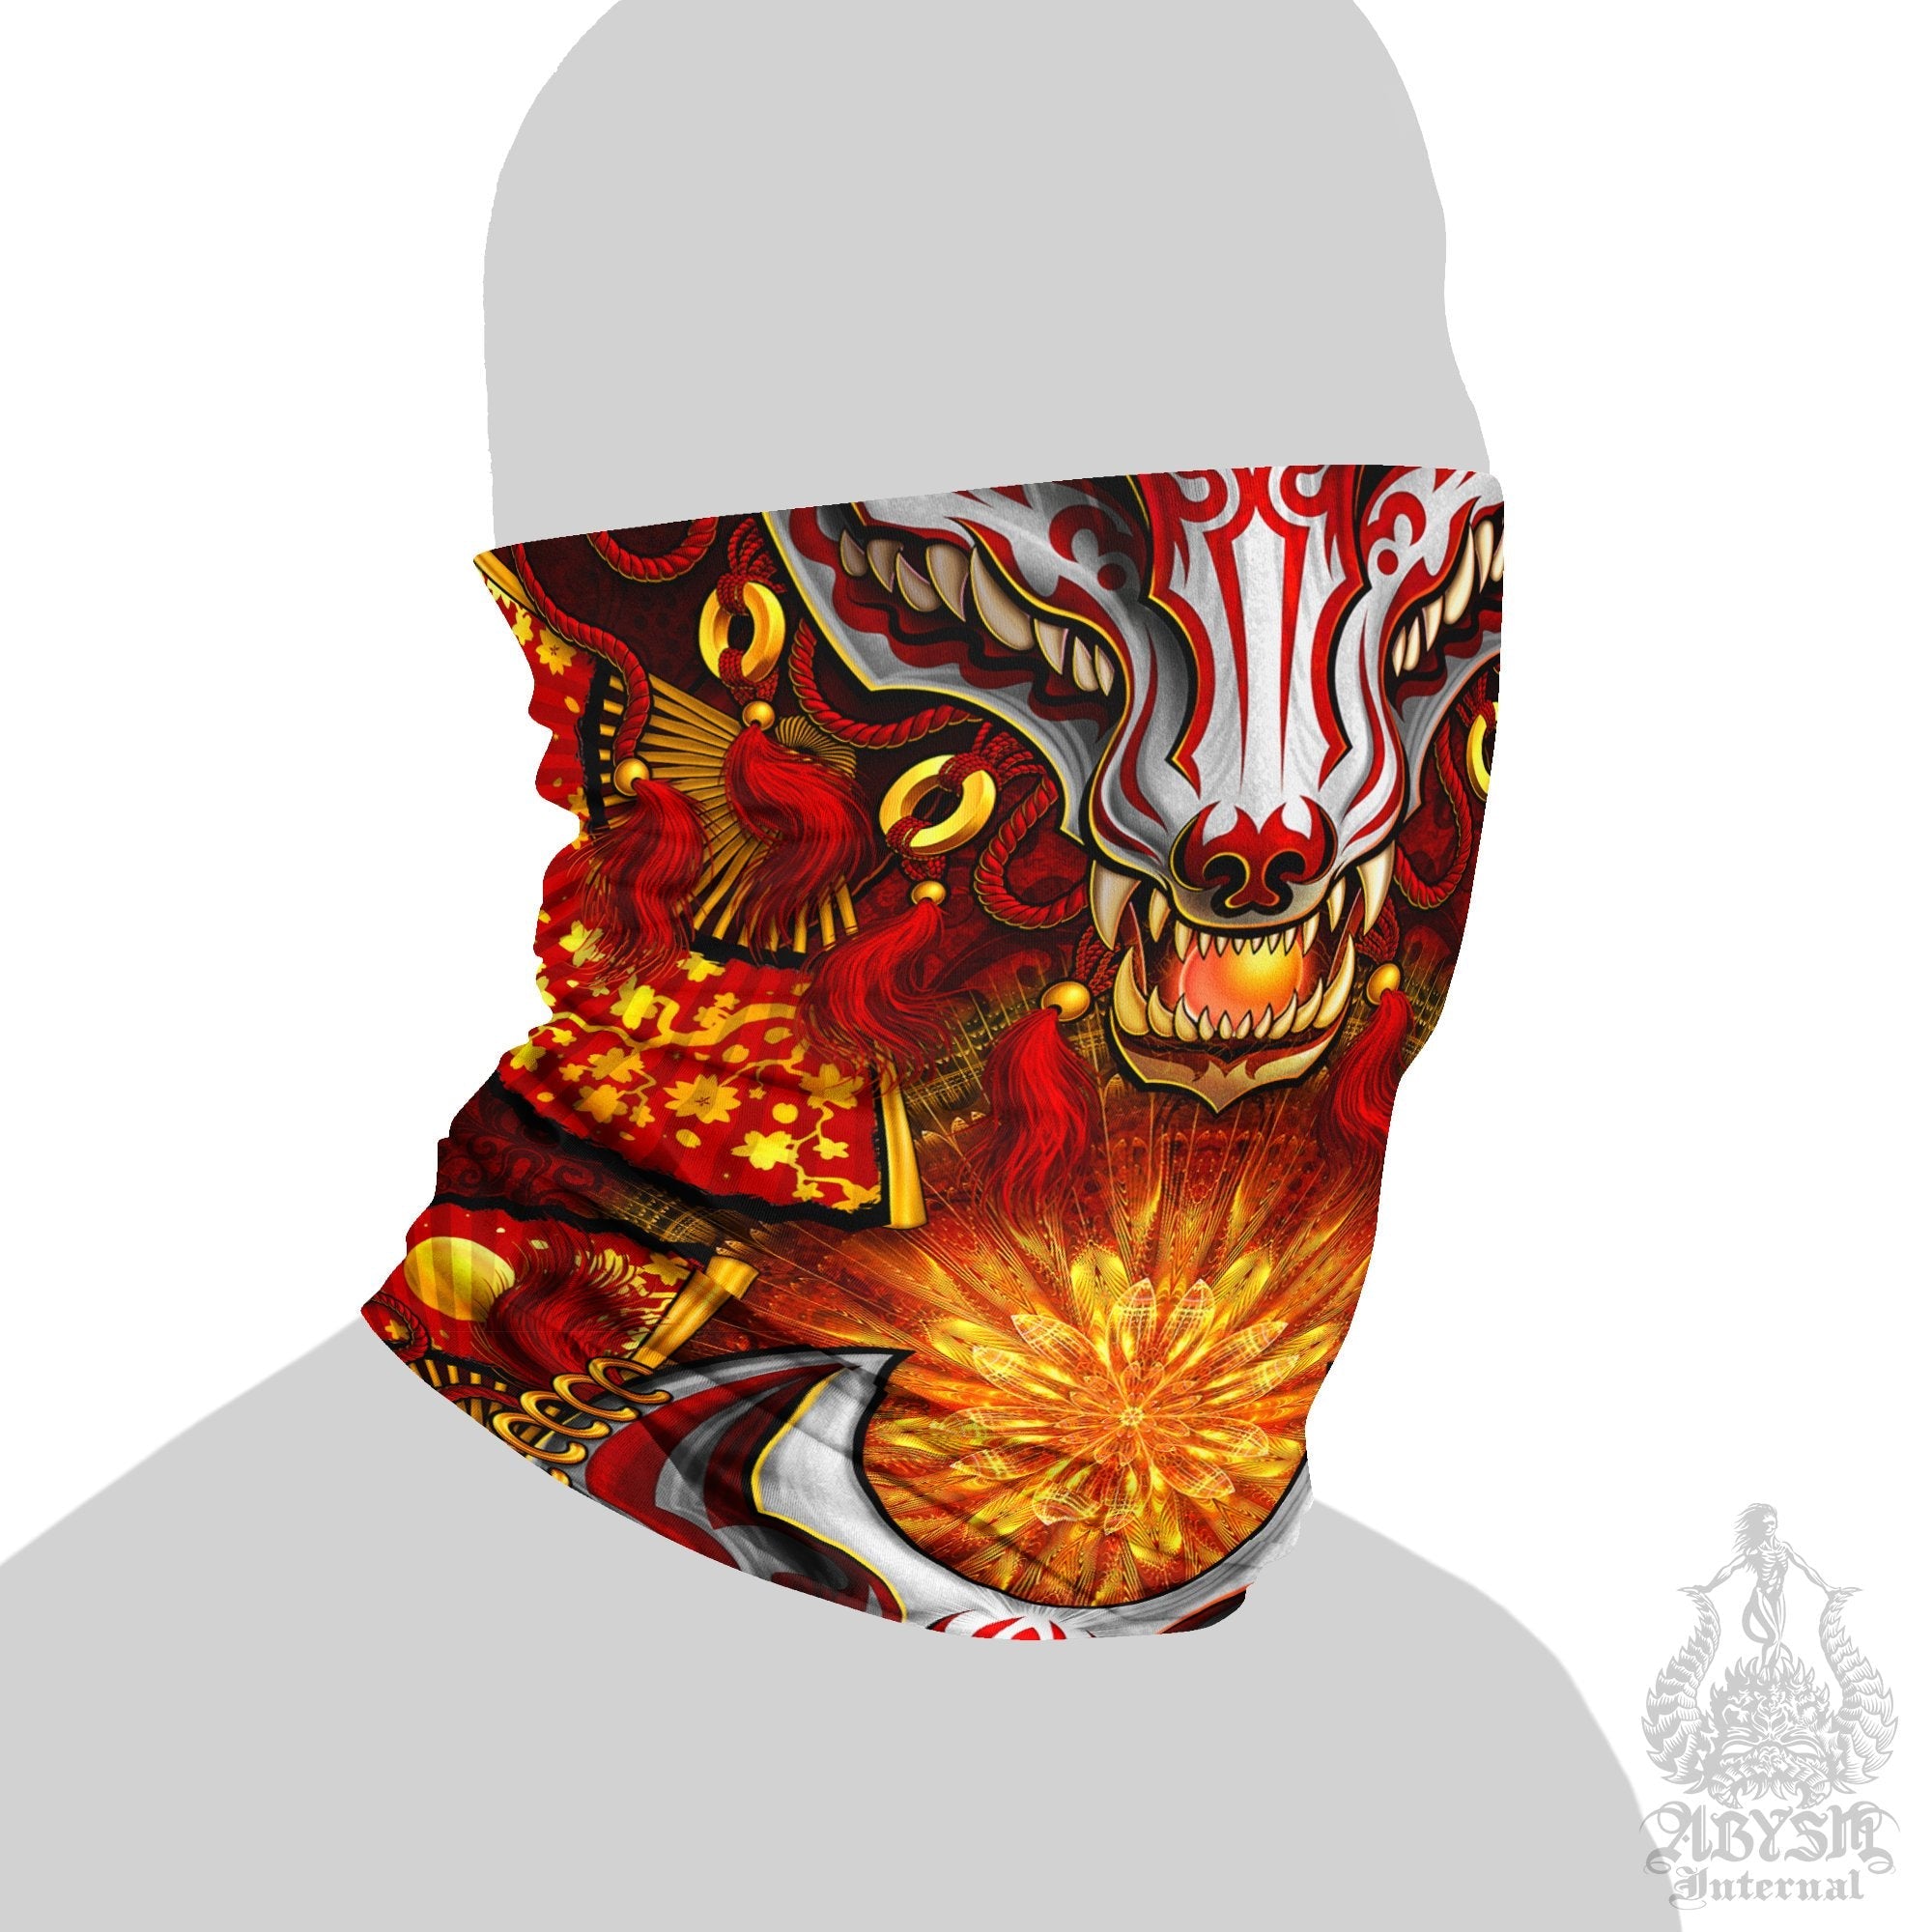 Japanese Neck Gaiter, Face Mask, Head Covering, Kitsune, Japanese Fox, Okami, Anime and Gamer Gift - Red & White - Abysm Internal